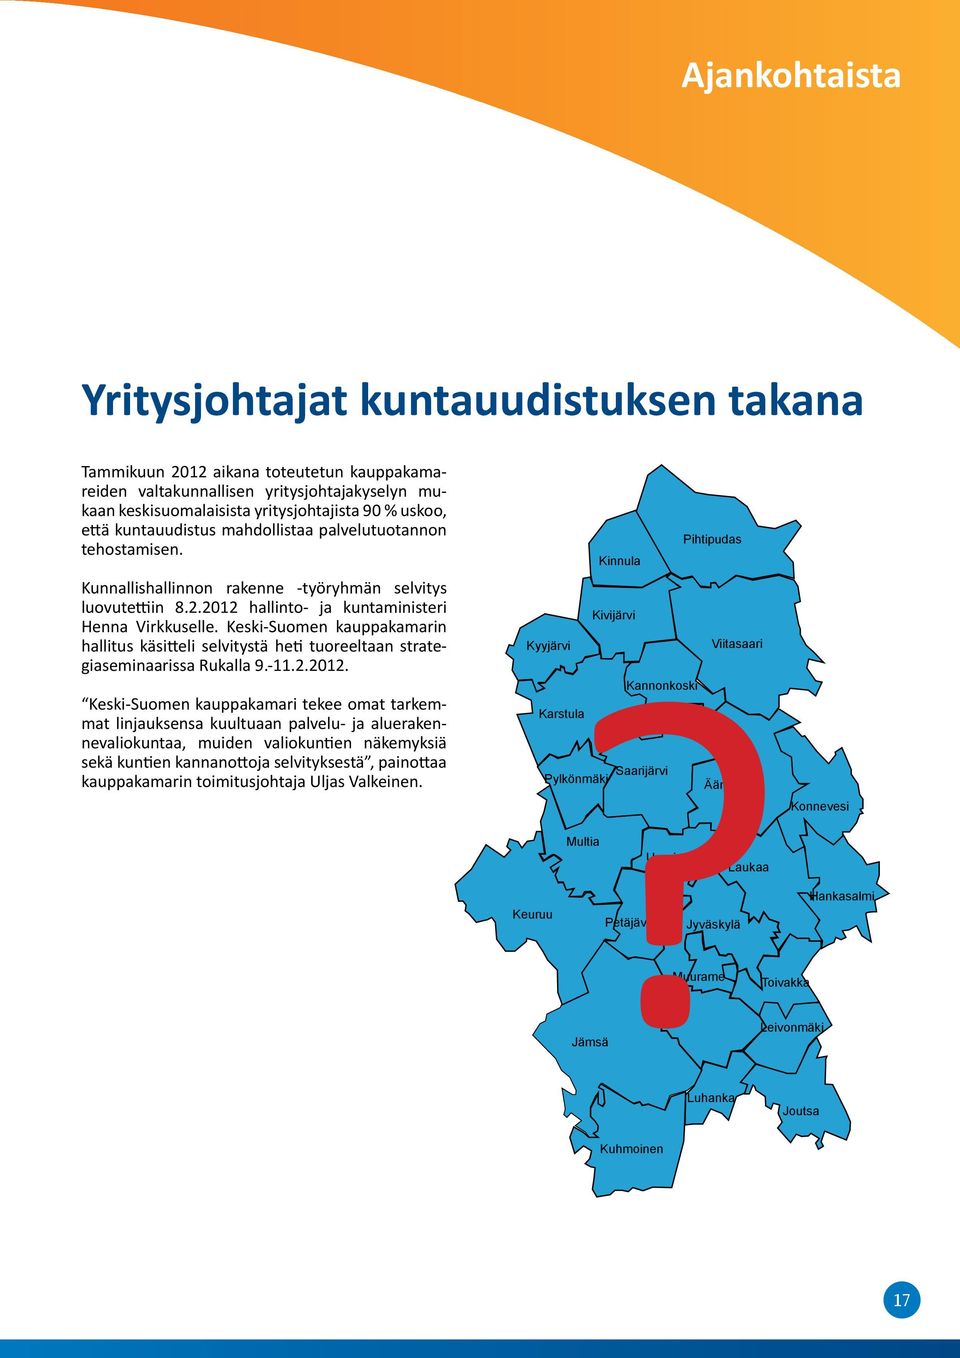 Keski-Suomen kauppakamarin hallitus käsitteli selvitystä heti tuoreeltaan strategiaseminaarissa Rukalla 9.-11.2.2012.